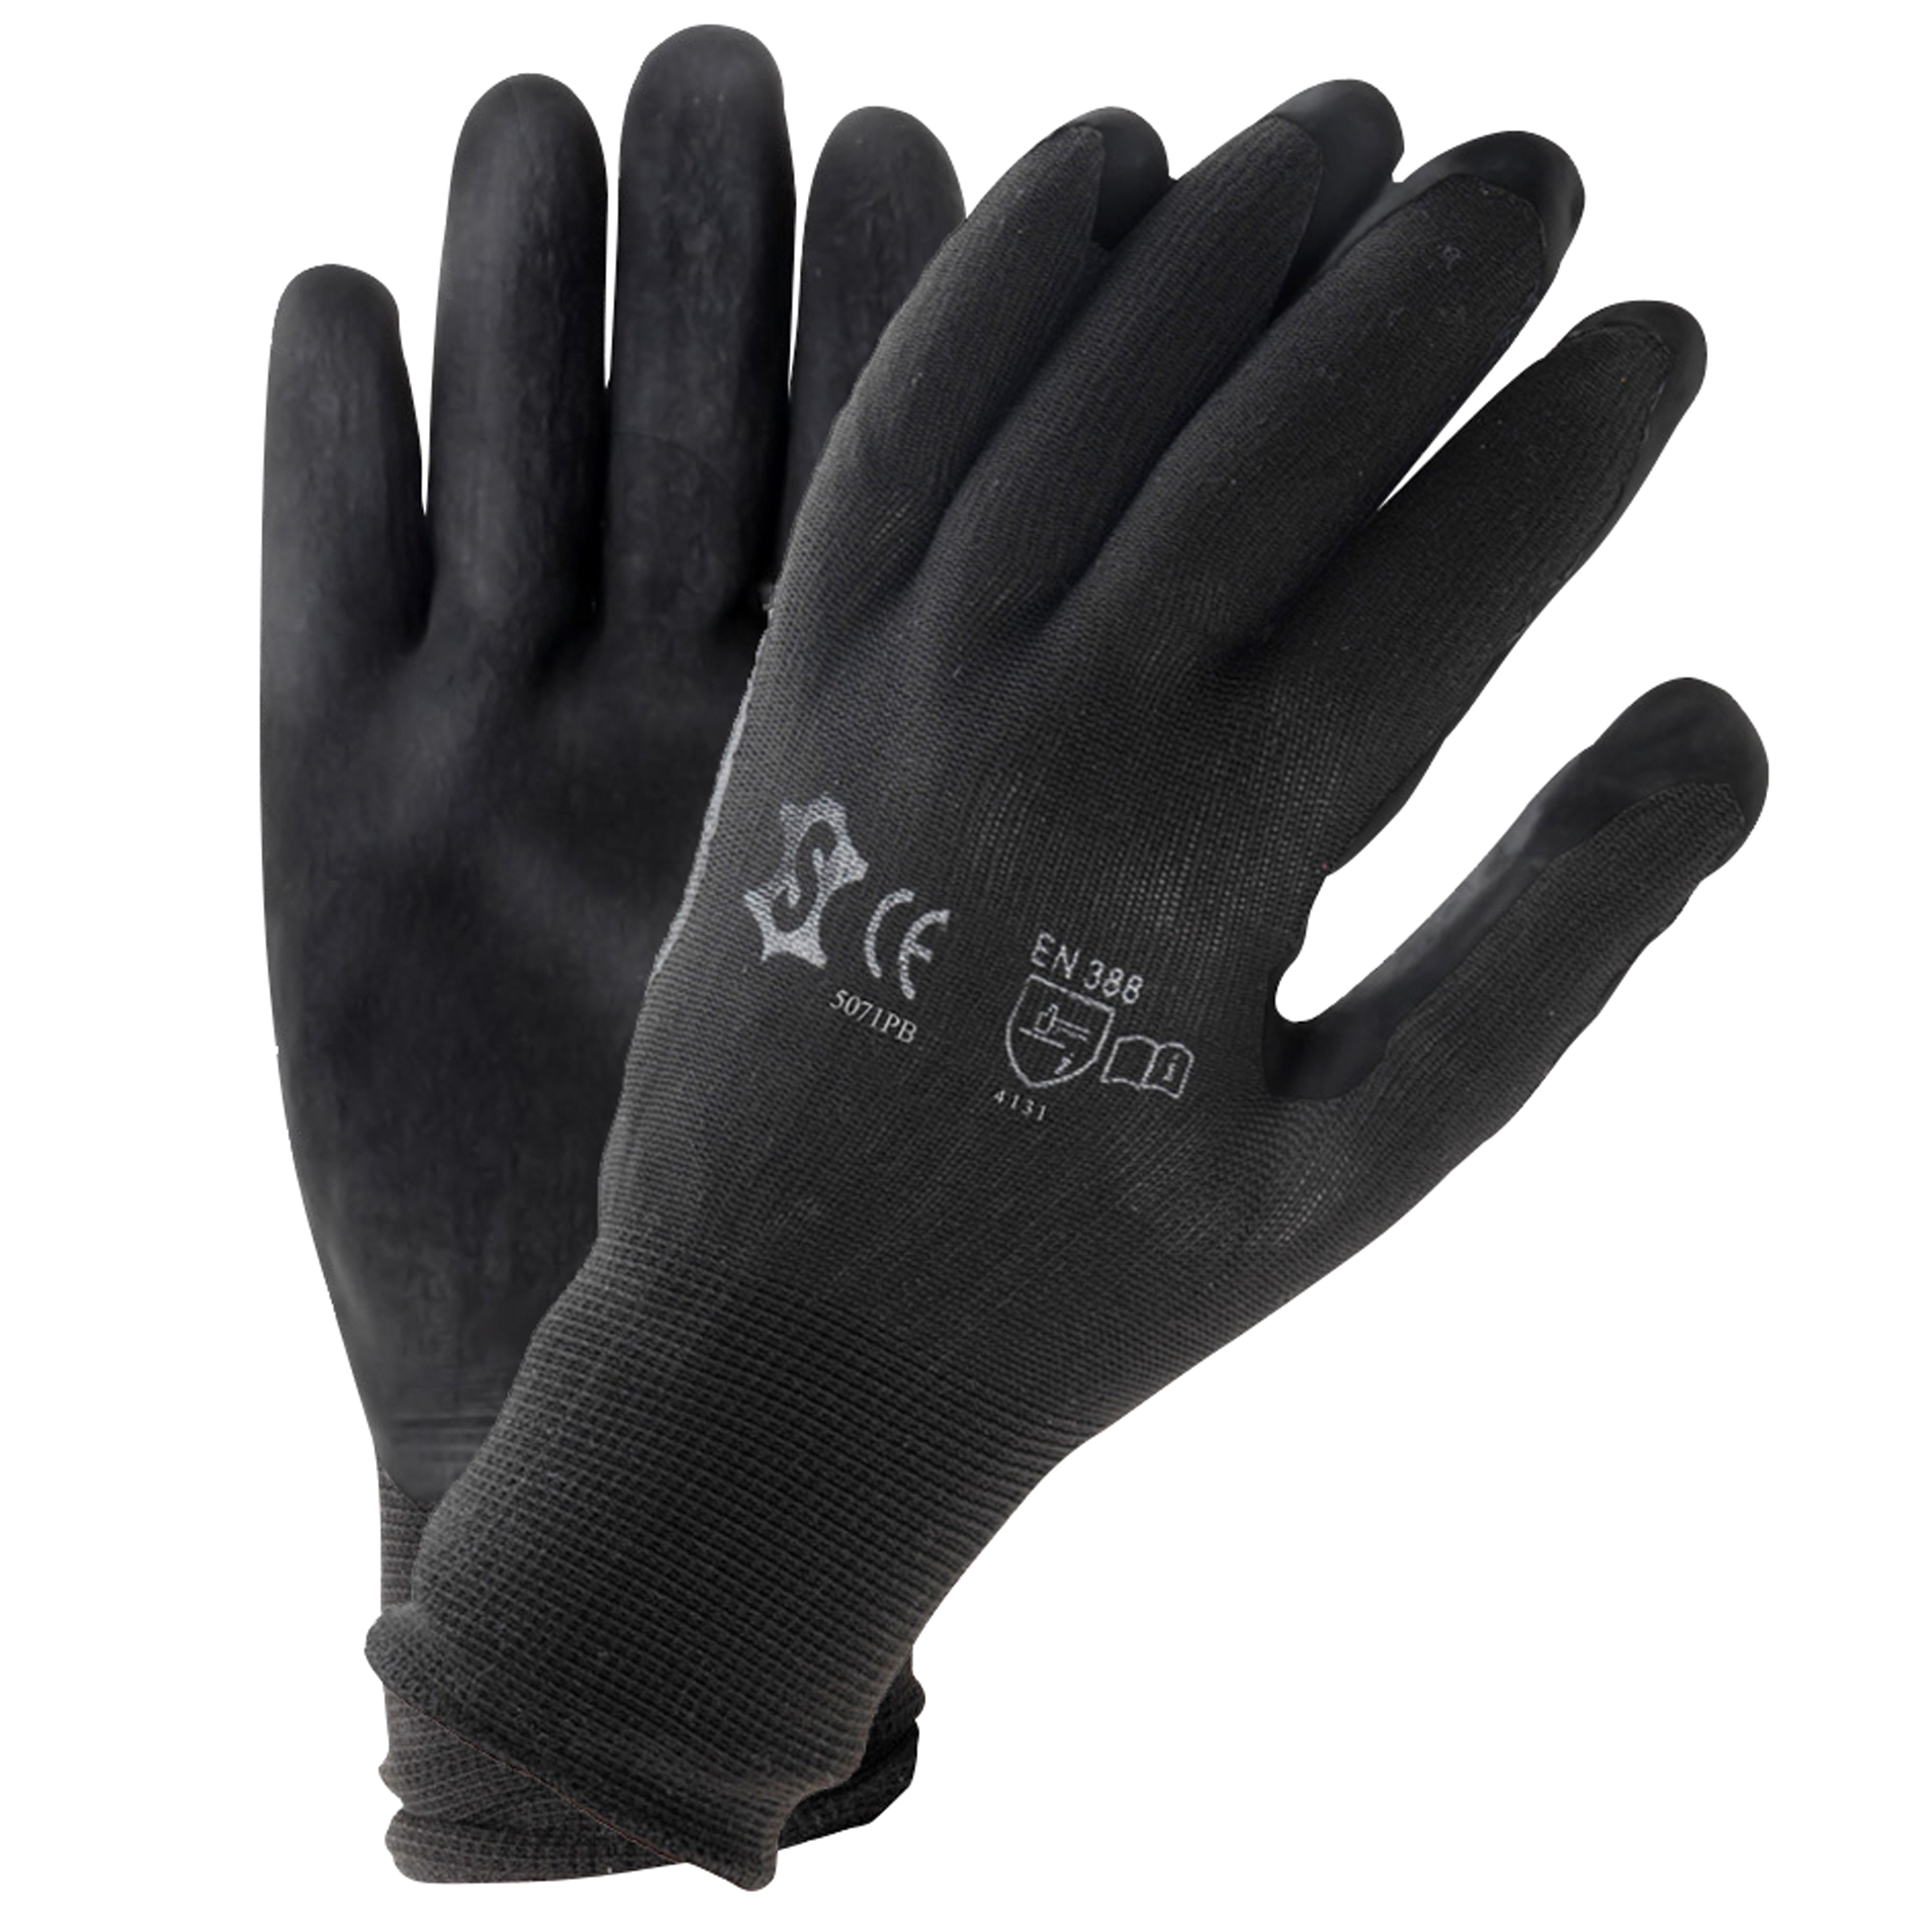 Handschoenen PU zwart maat 8 (L)